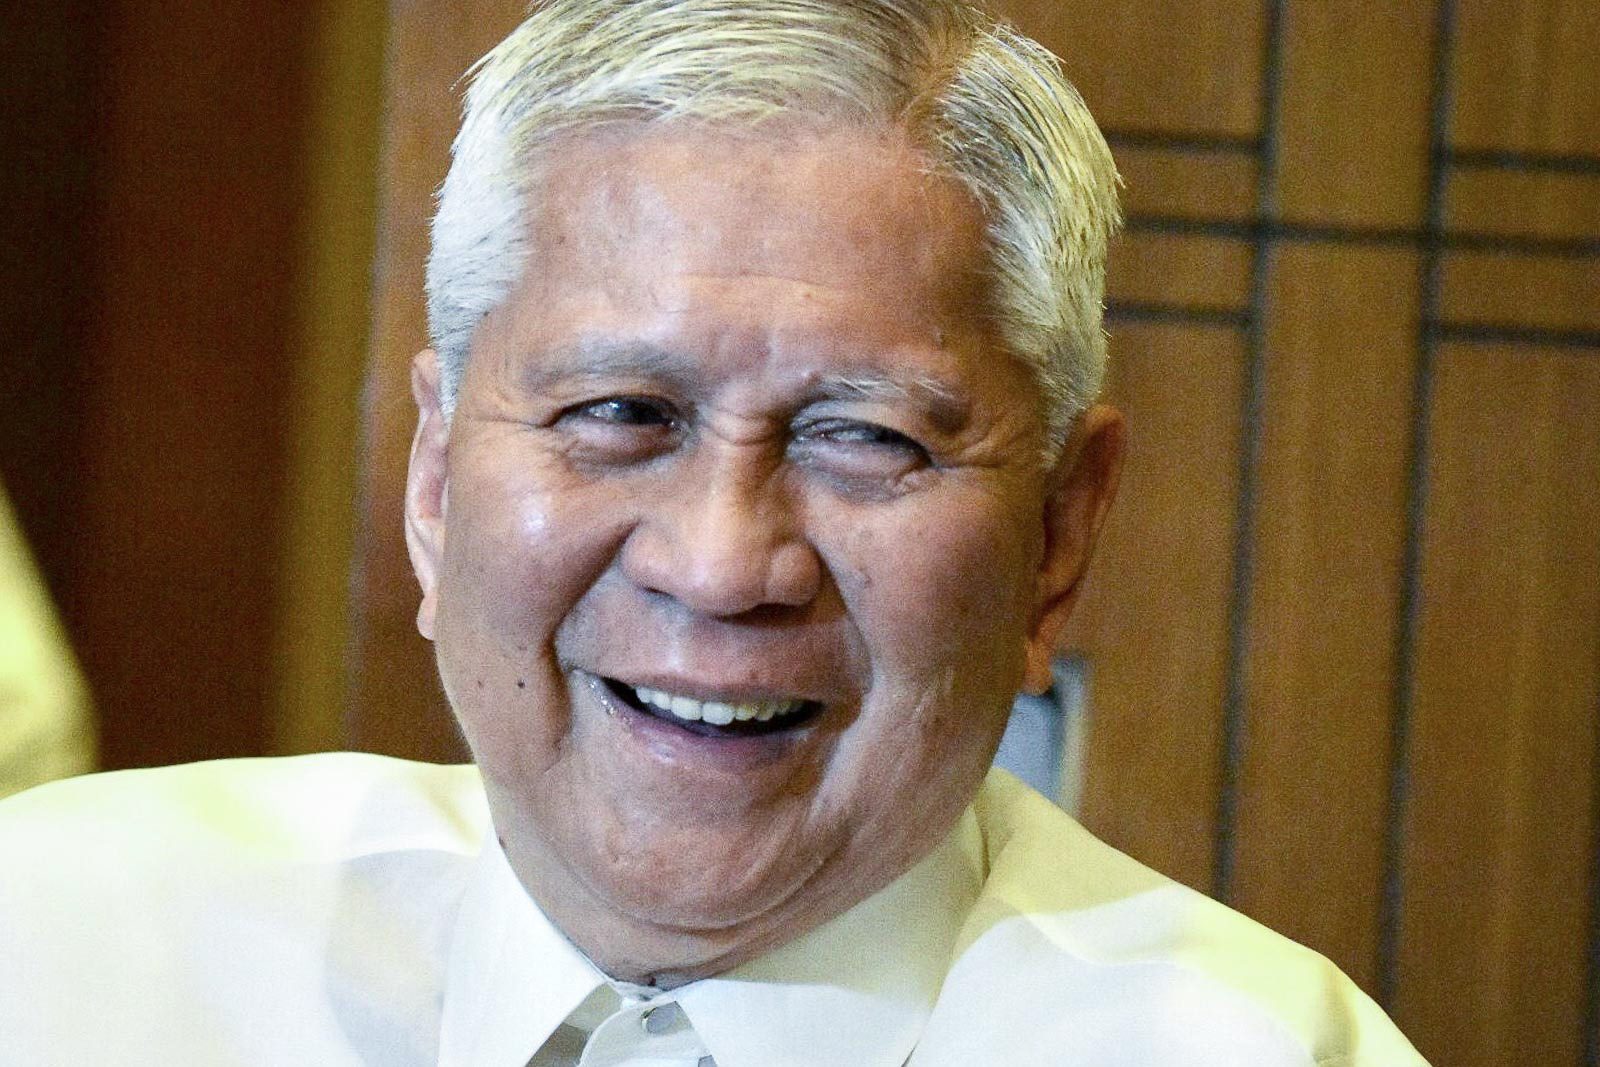 Albert del Rosario, former Philippine foreign secretary, dies at 83